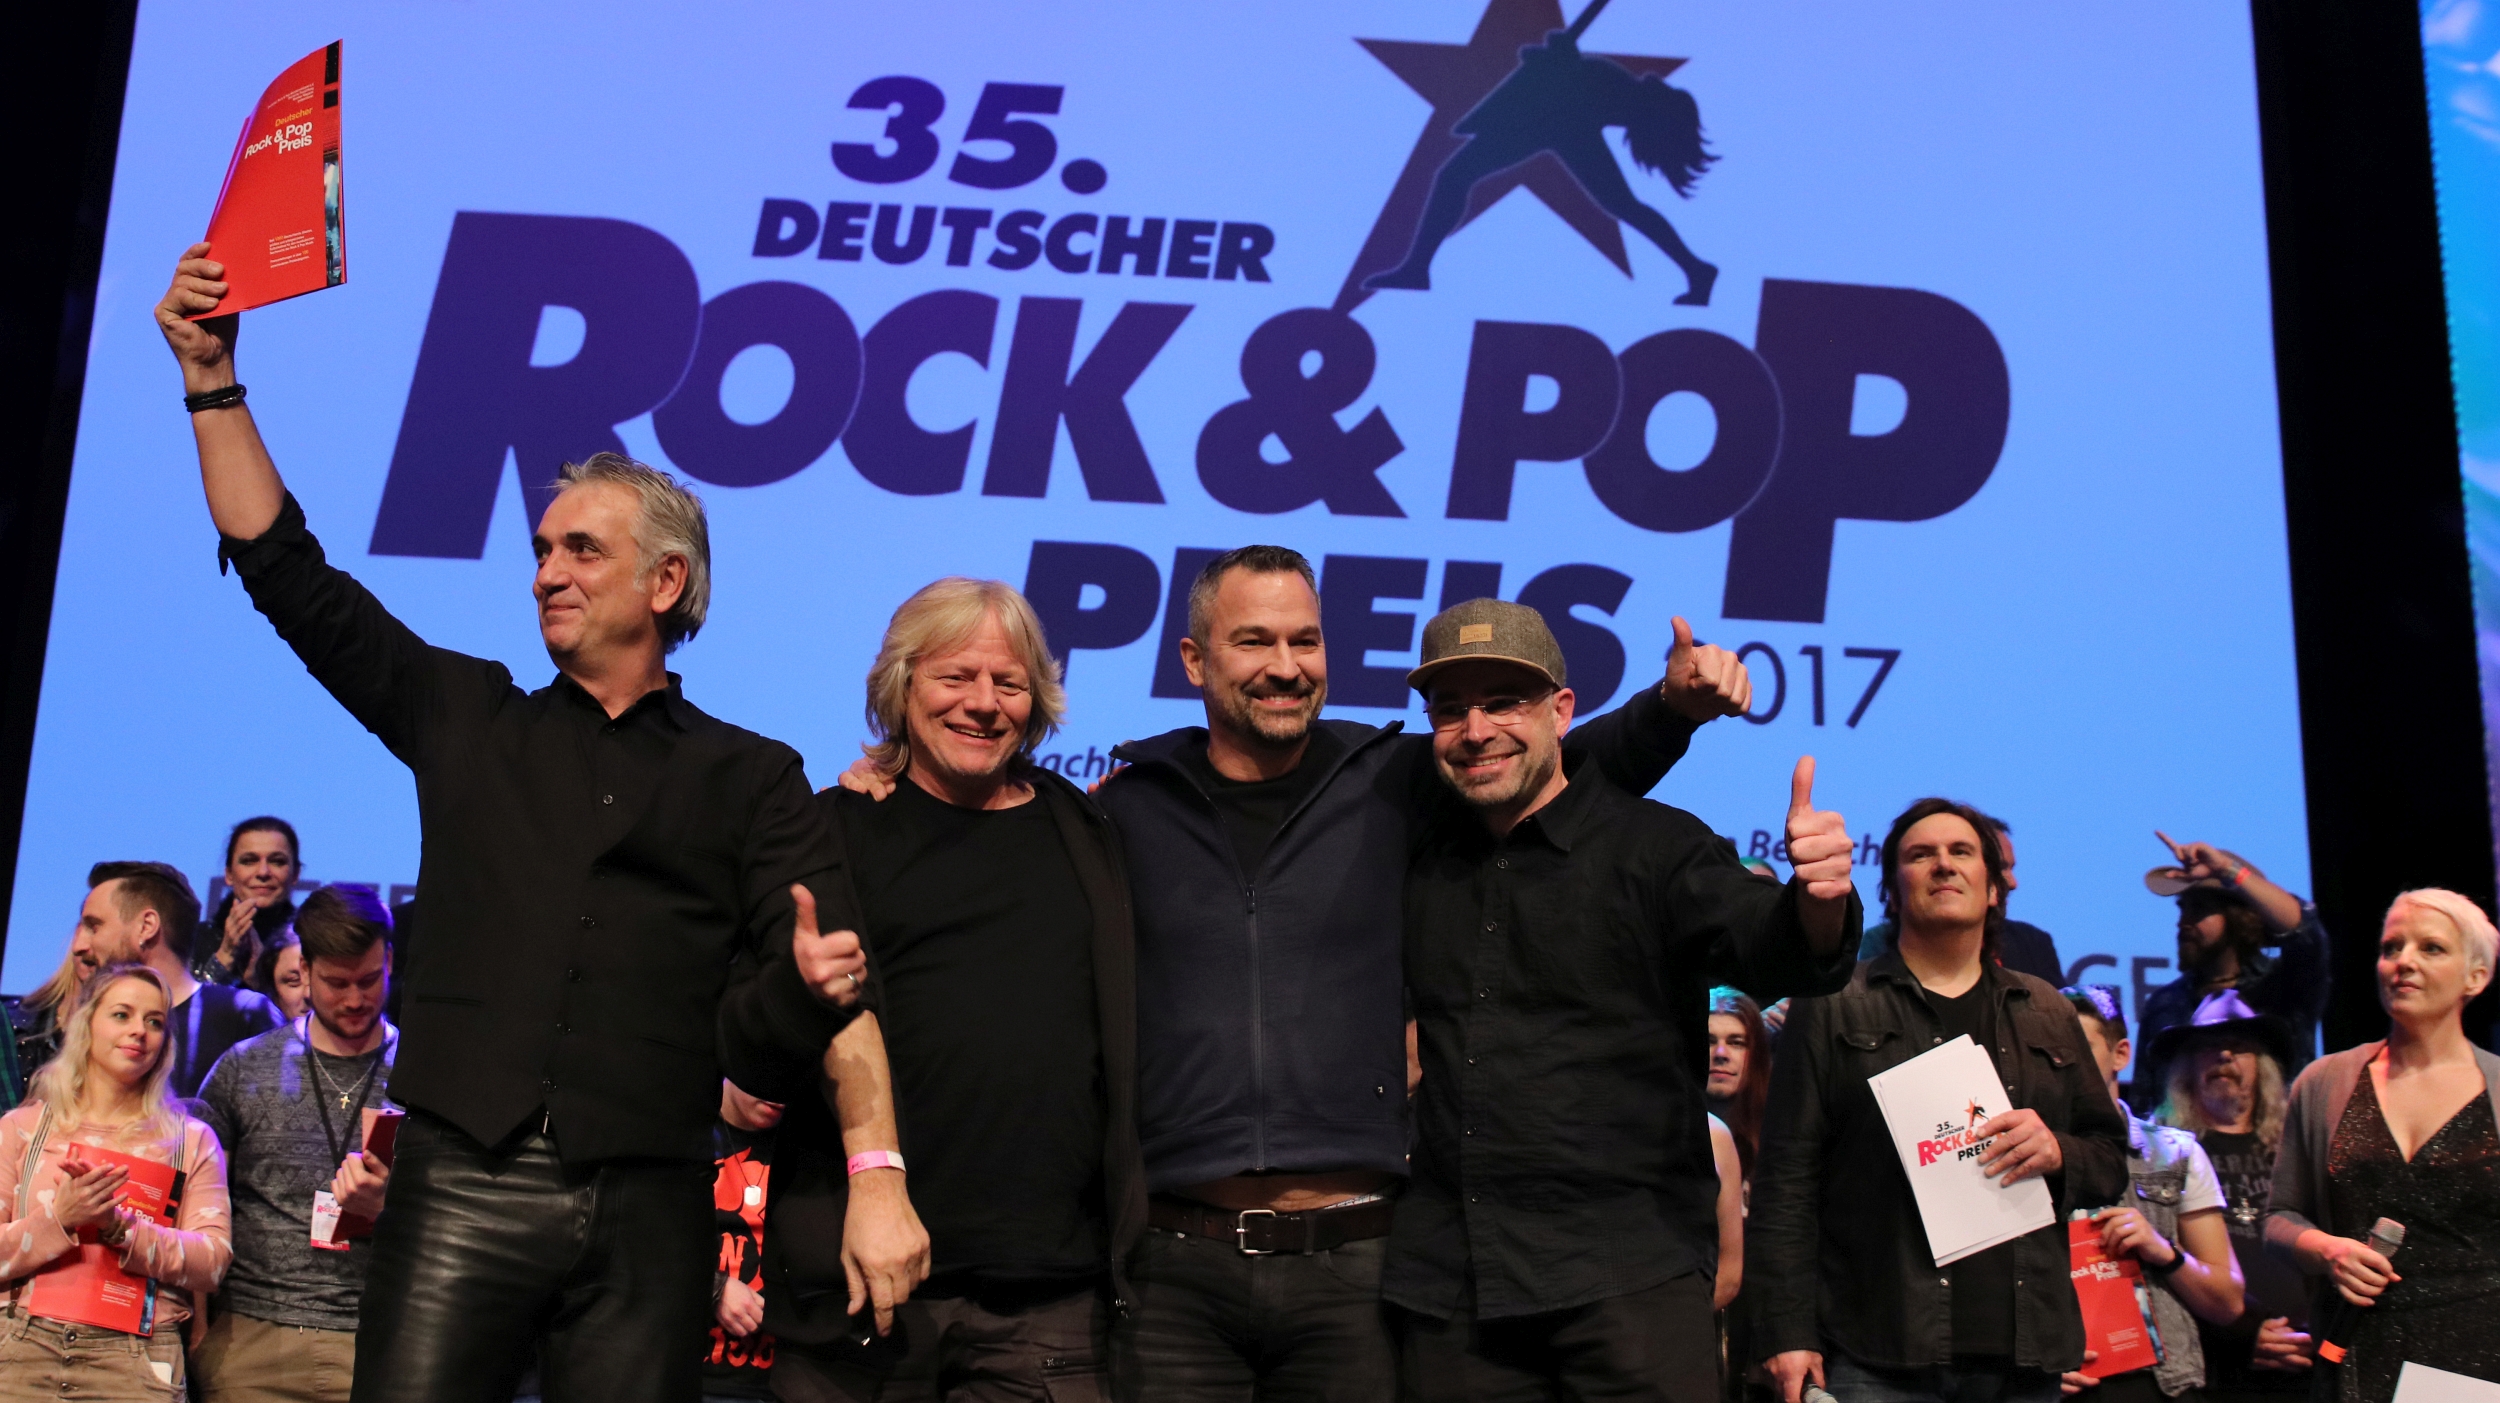 falb gewinnt zweiten Platz beim Deutschen Rock & Pop Preis 2017